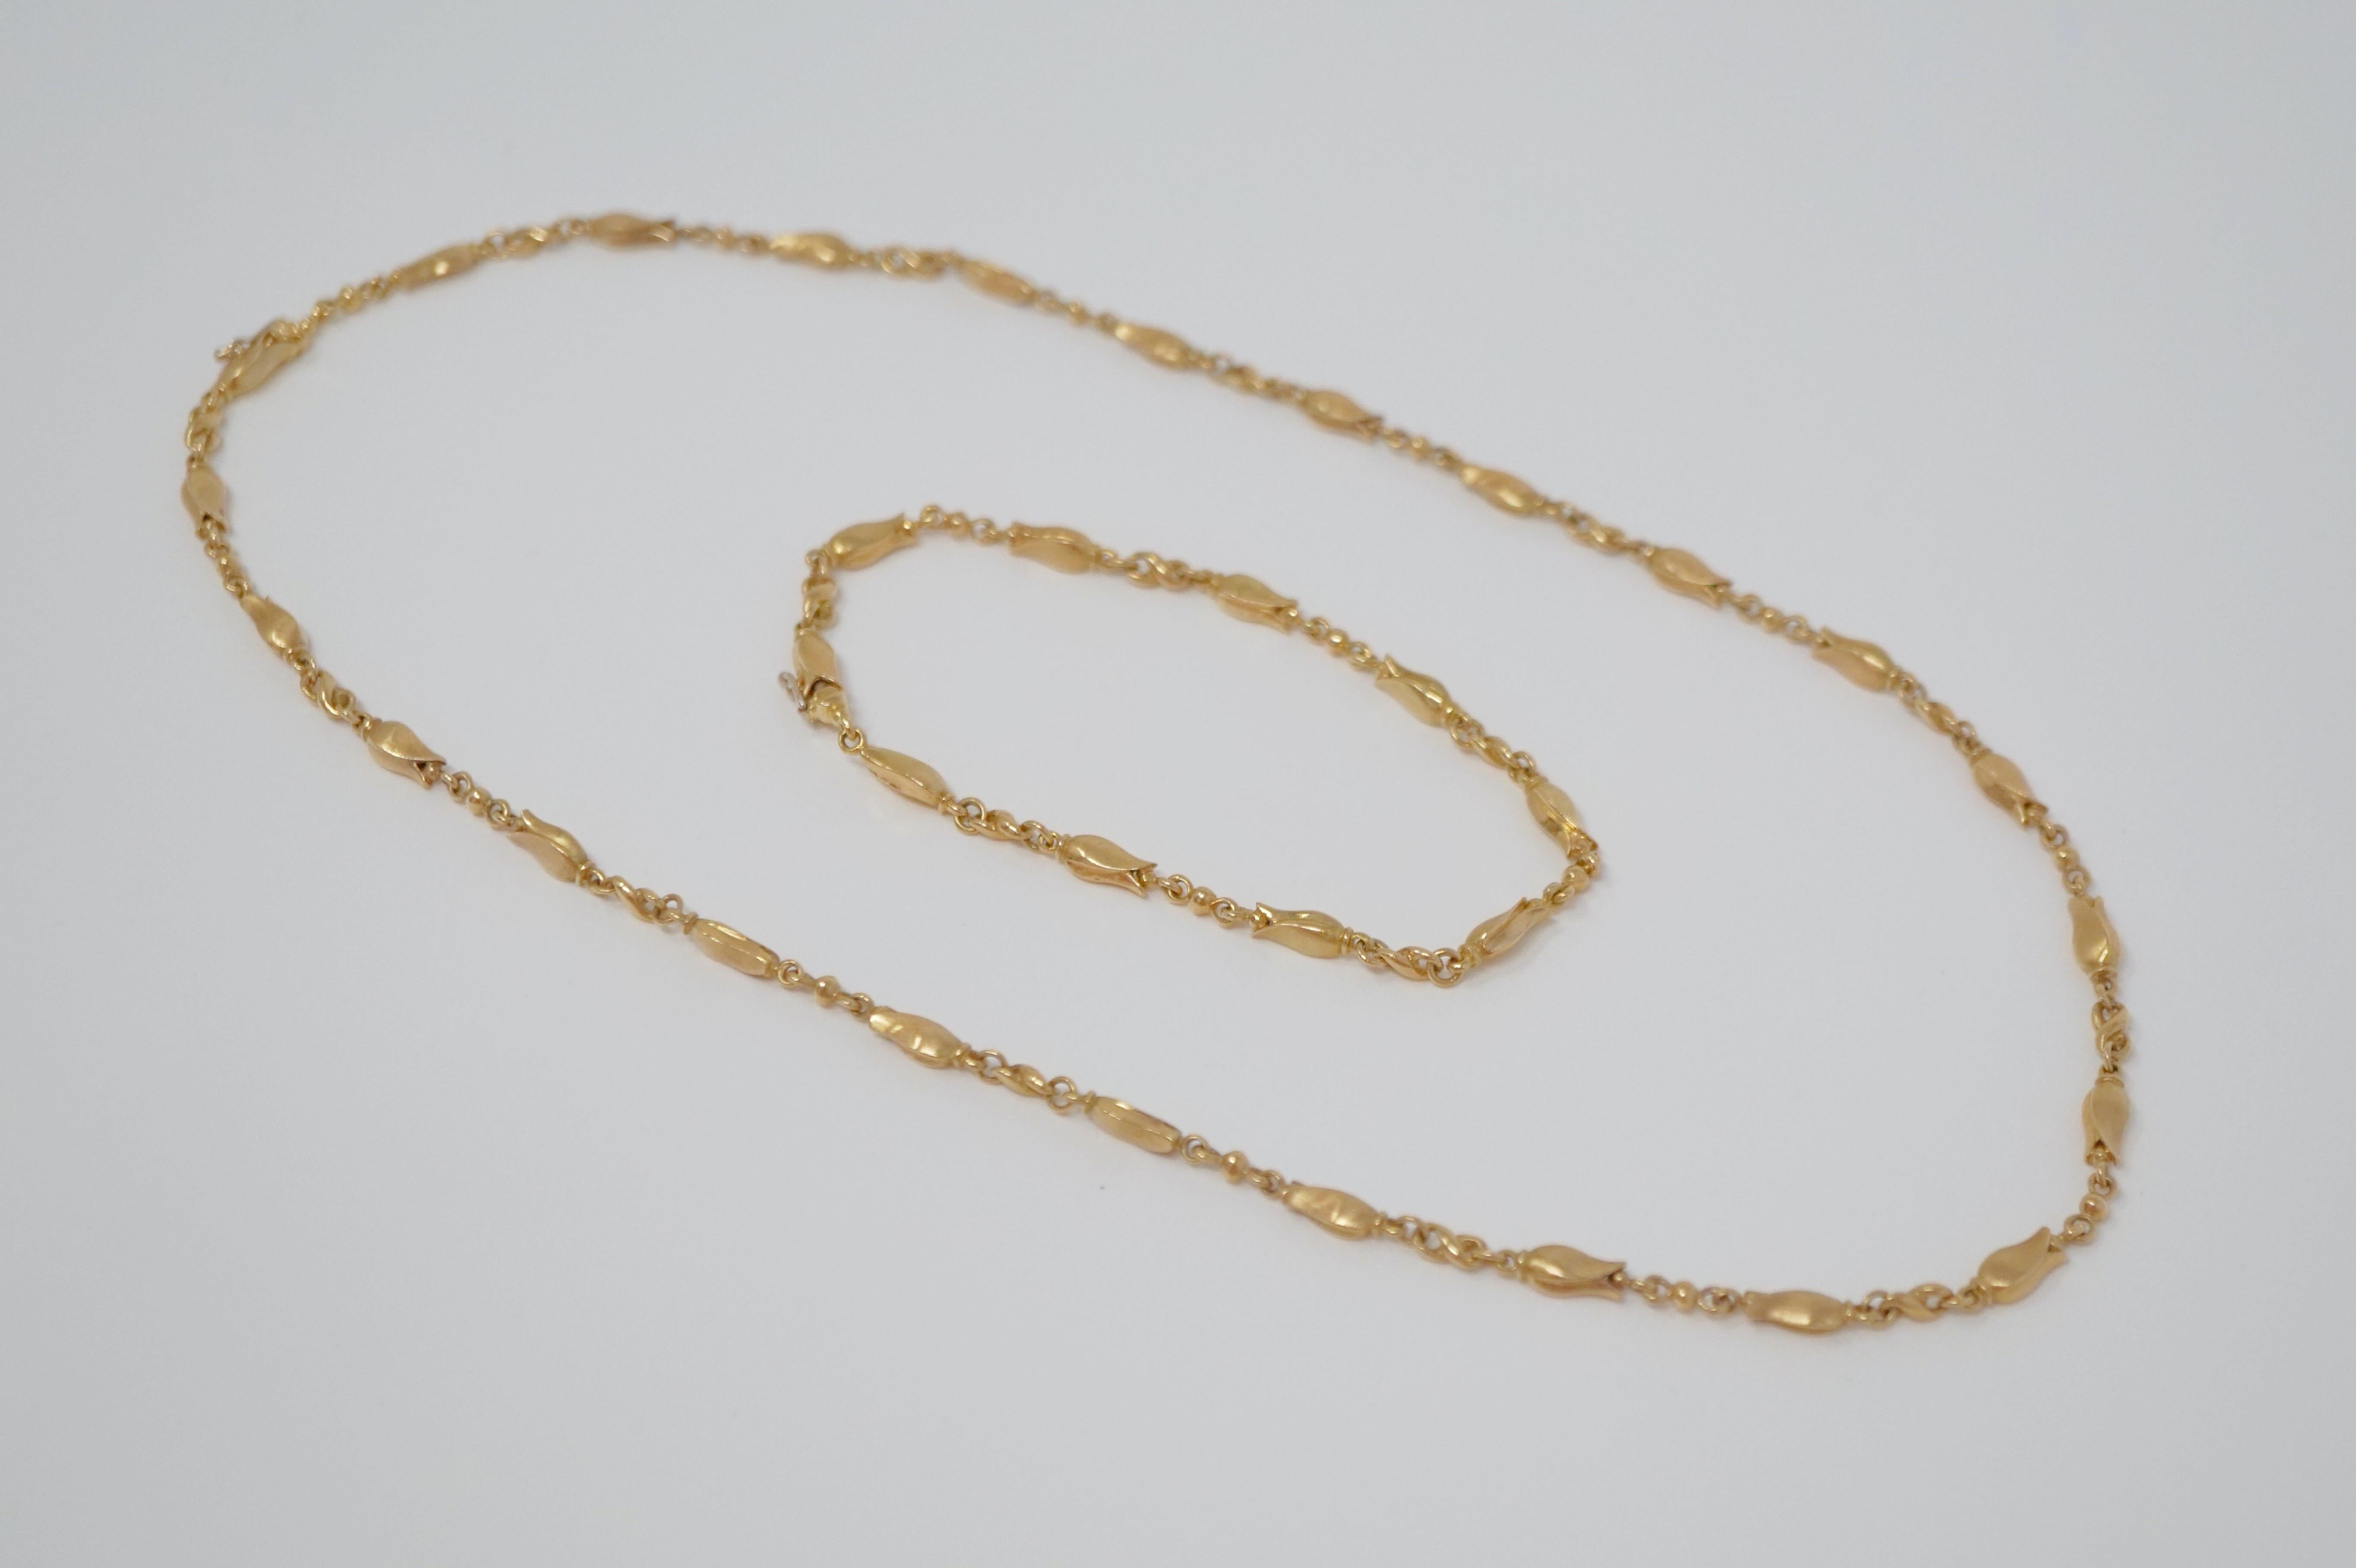 Georg Jensen 18 Karat Gold Necklace and Bracelet Set, Signed 5